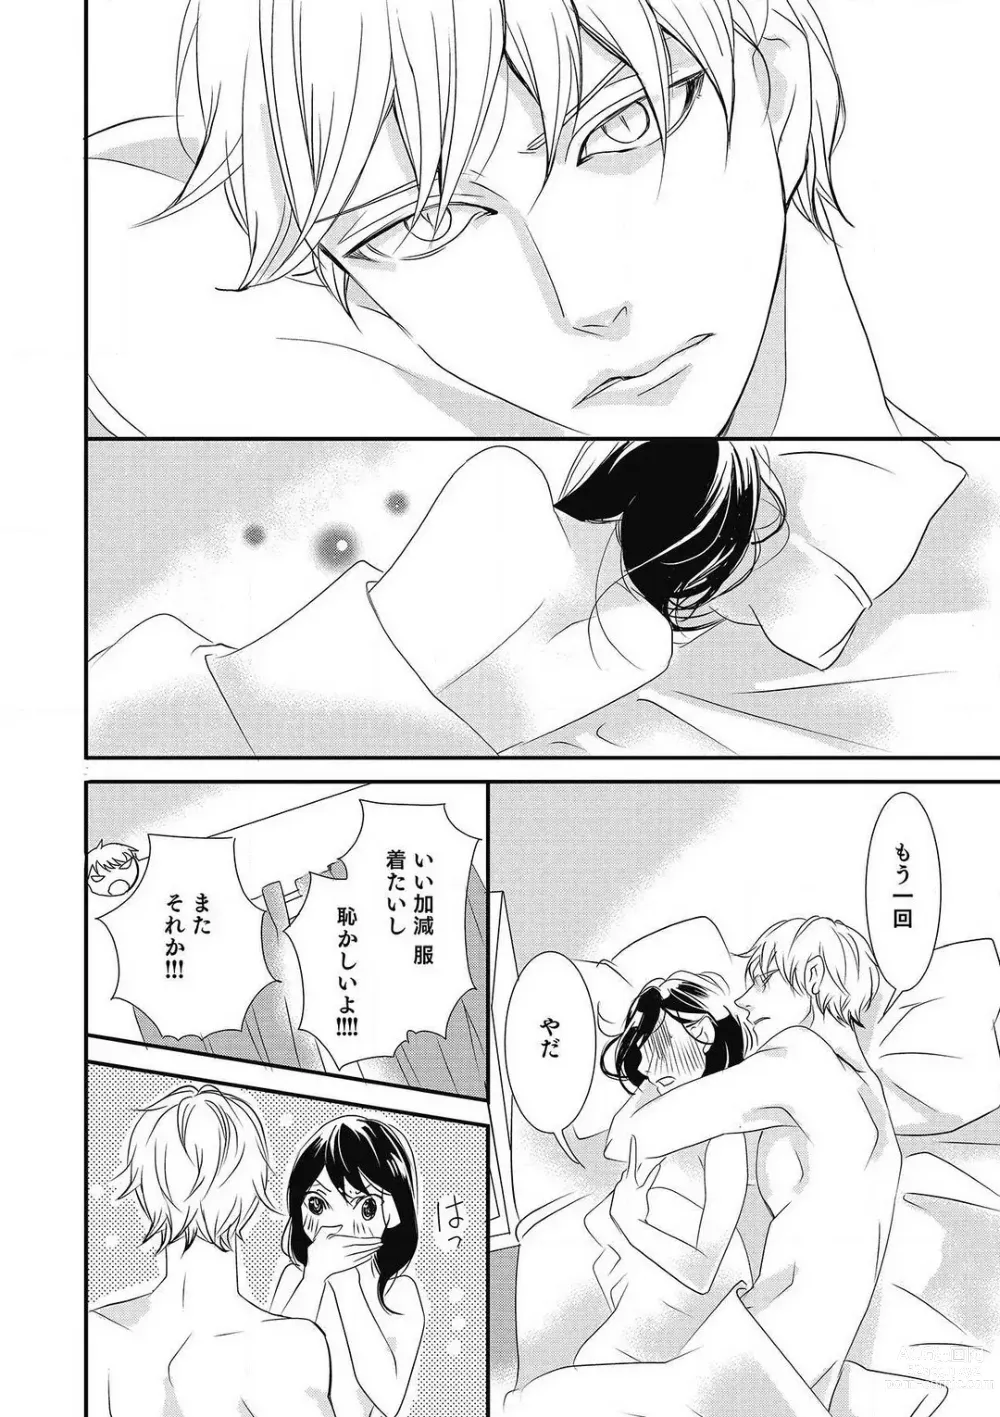 Page 216 of manga Manekiirete wa Ikemasen 1-10